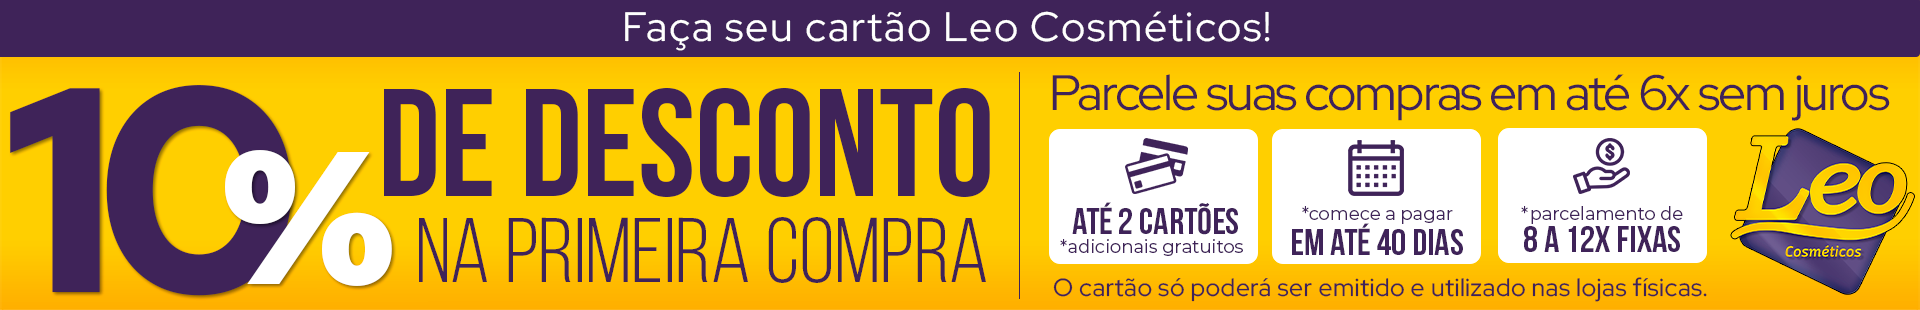 CARTÃO LEO DESK